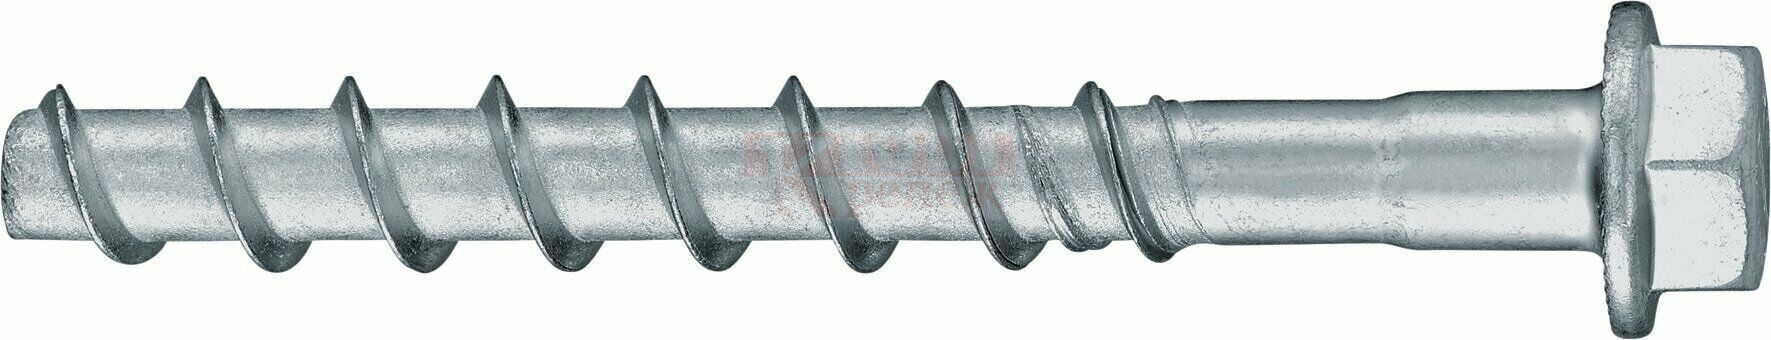 HUS2-H 8/10 8x105 Анкер-шуруп HILTI для бетона оц. сталь, 10x105 50/30 мм